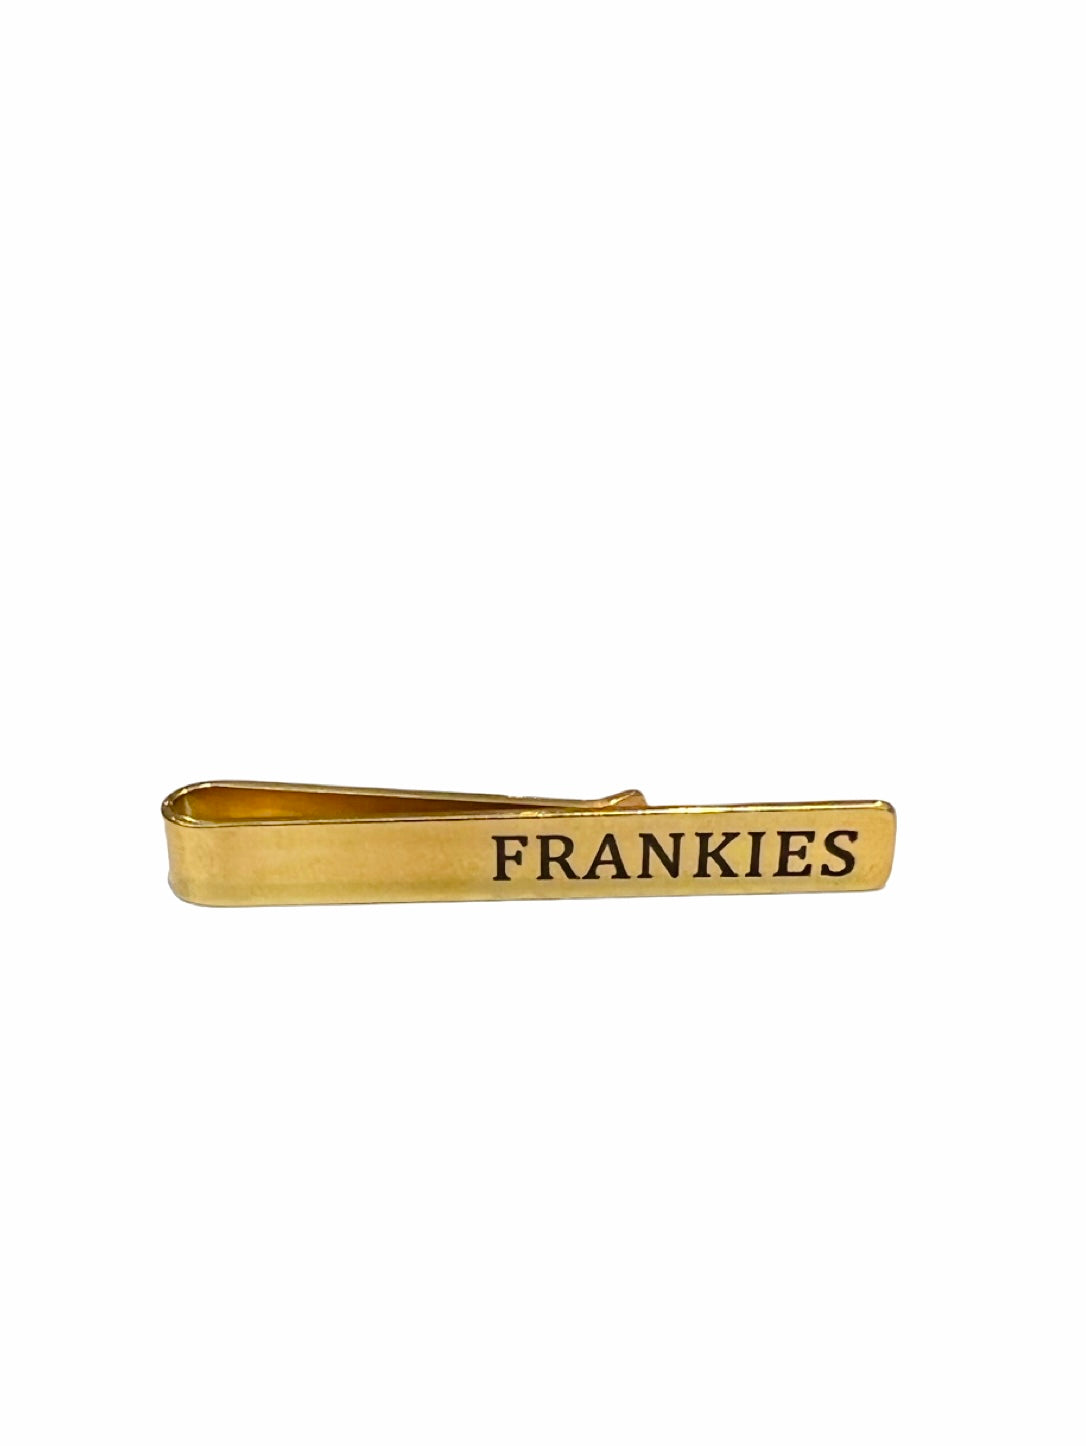 Dasspeld Frankie’s goud